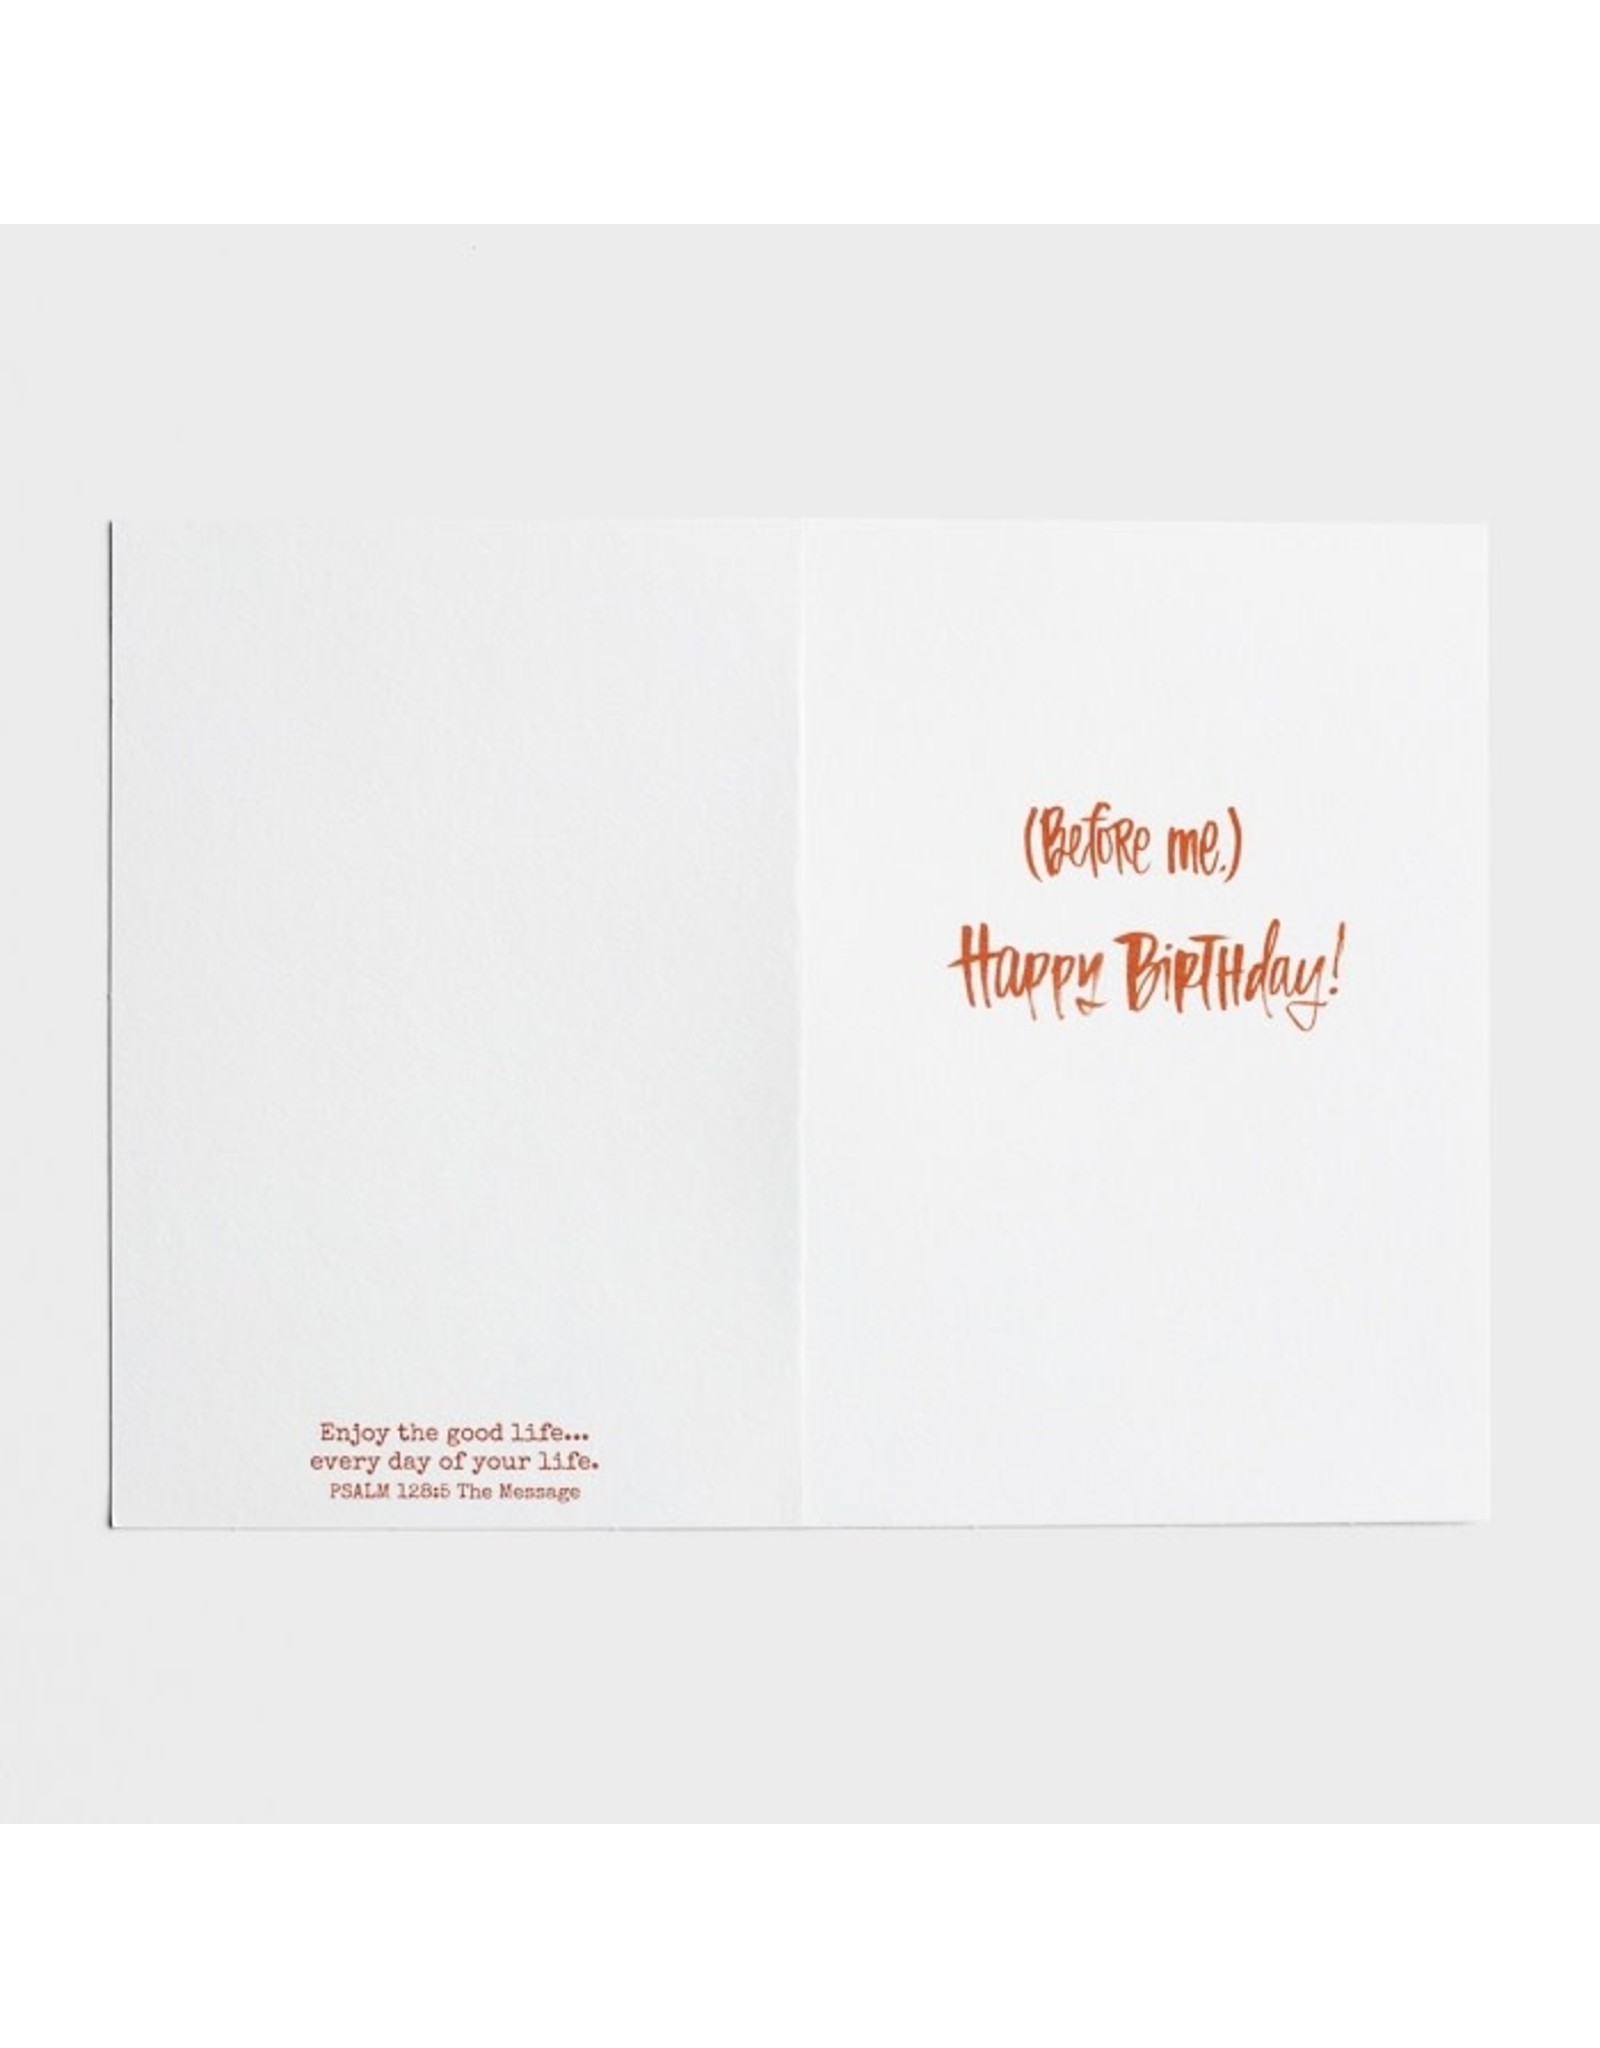 Dayspring Birthday Card - Glad You Were Born